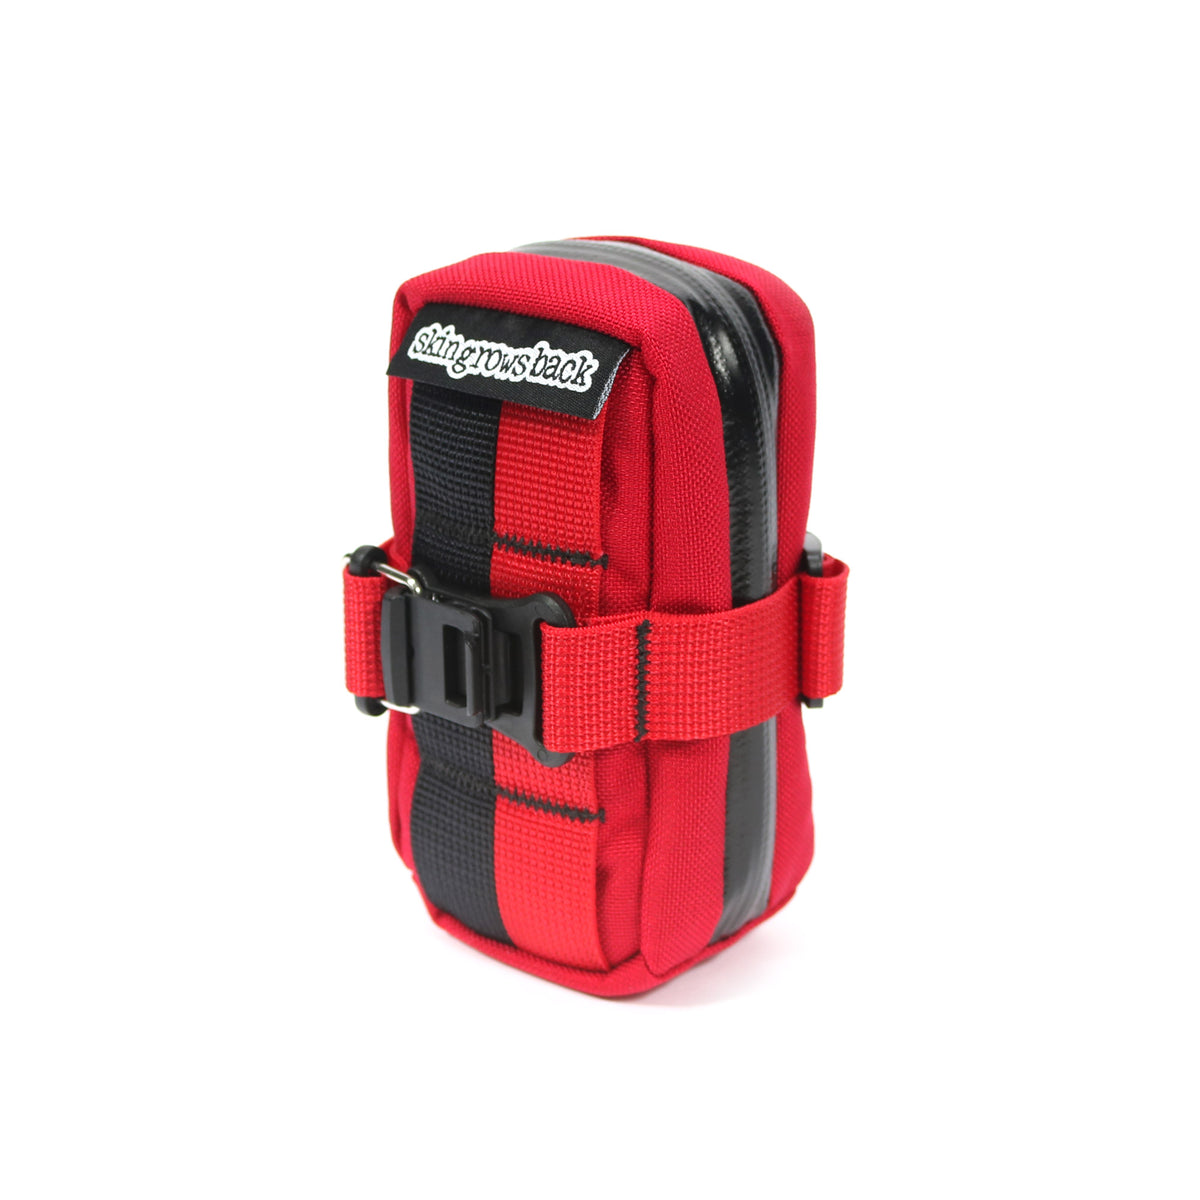 skingrowsback plan b cycling saddle bag imperial red strap